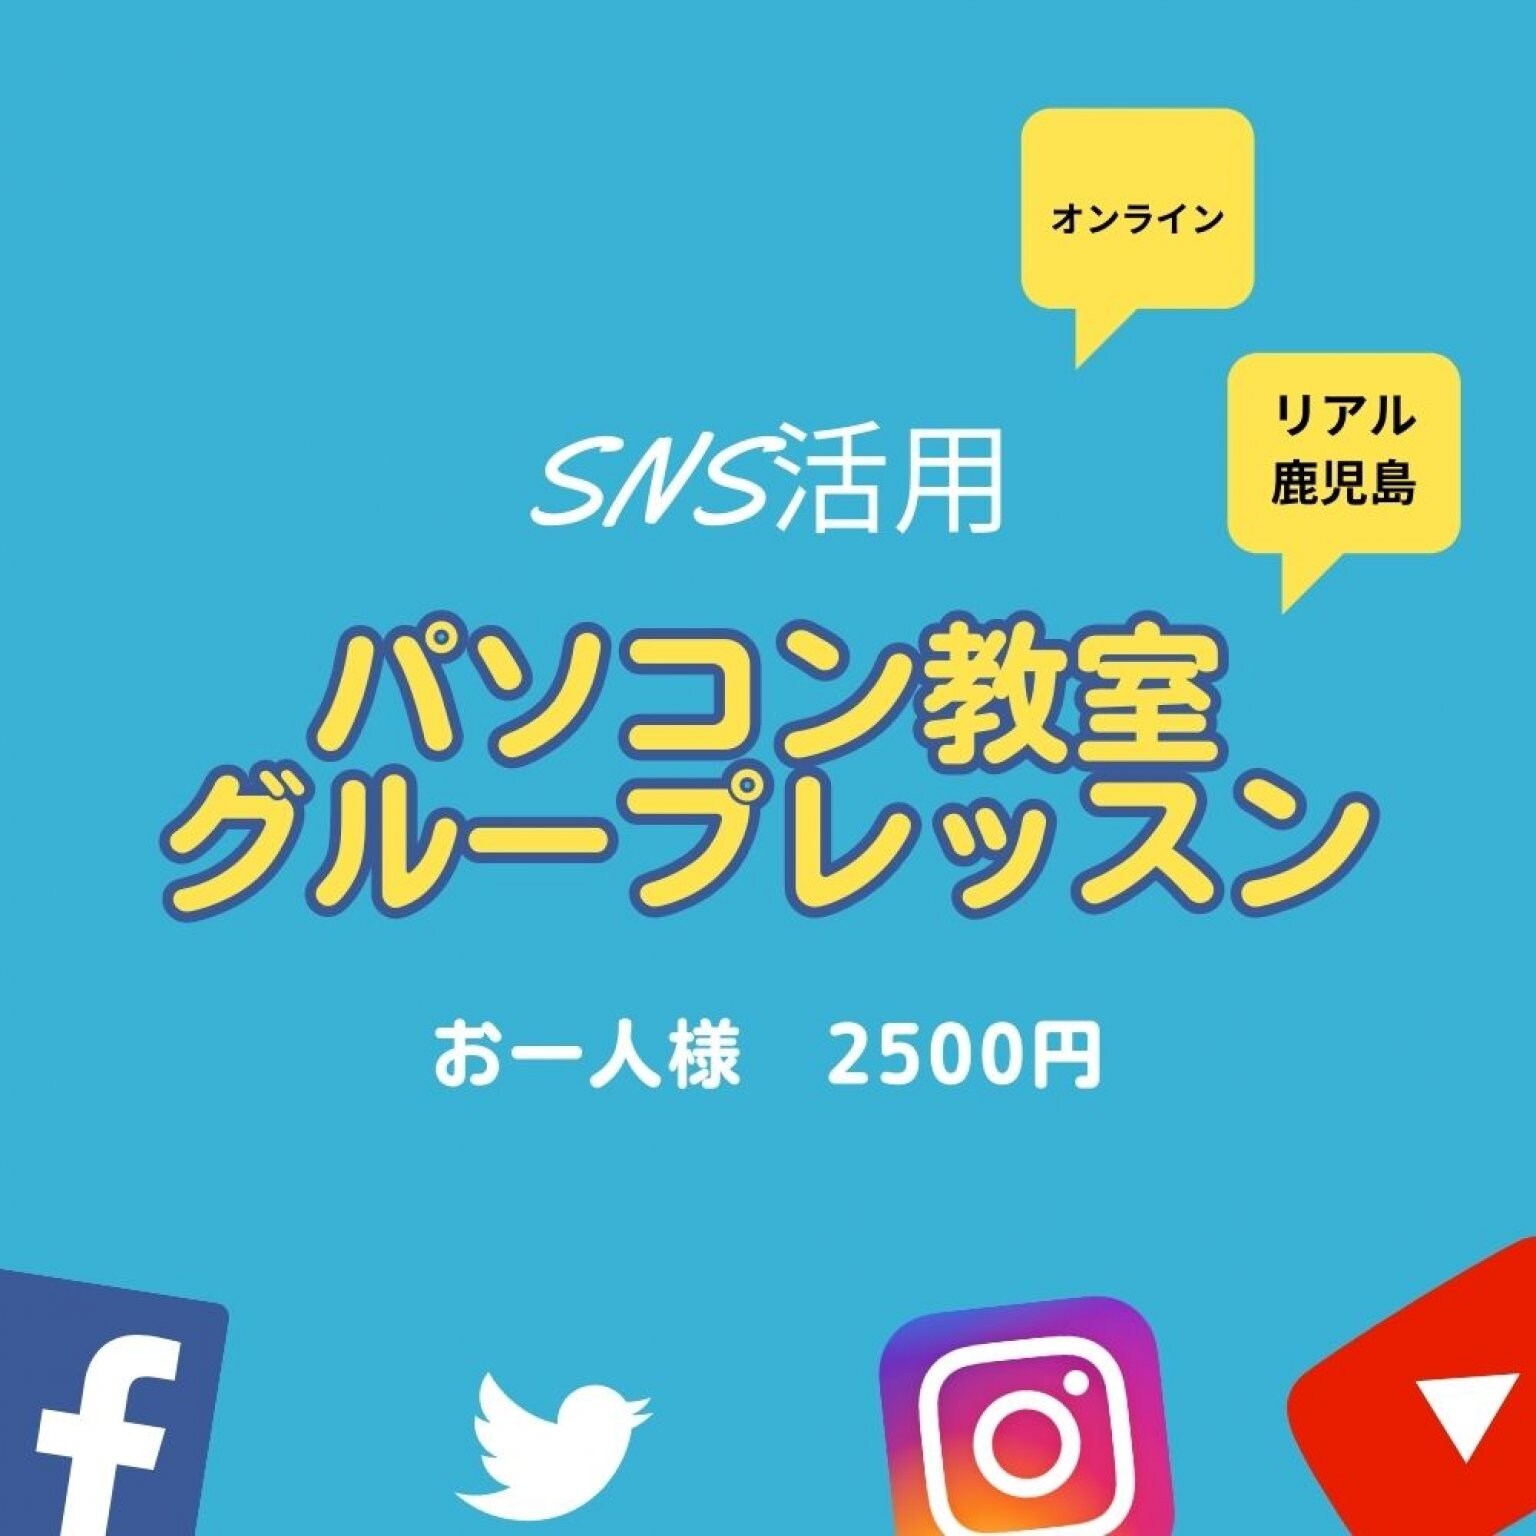 【リアル鹿児島orオンライン】SNS活用レッスンパソコン教室